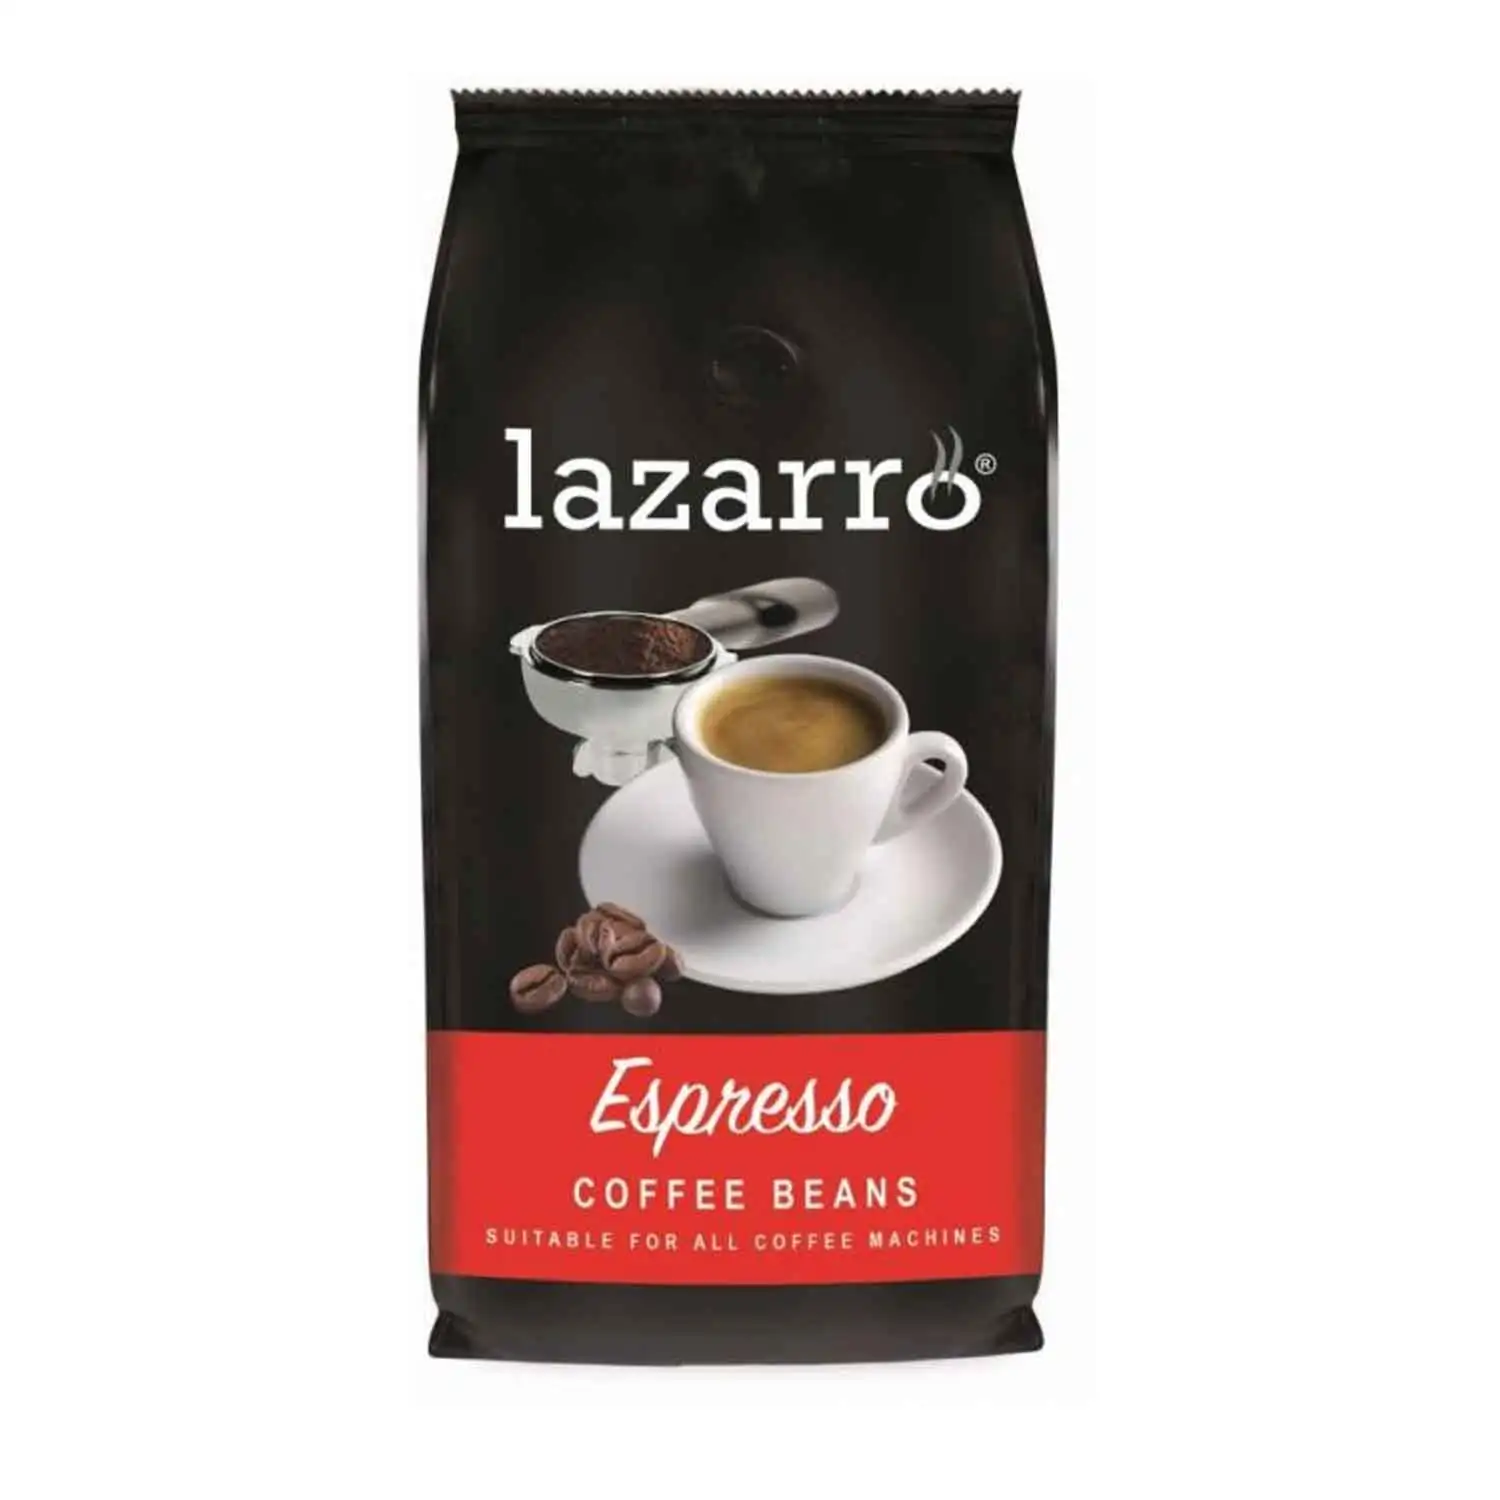 Lazarro coffee beans espresso 1kg